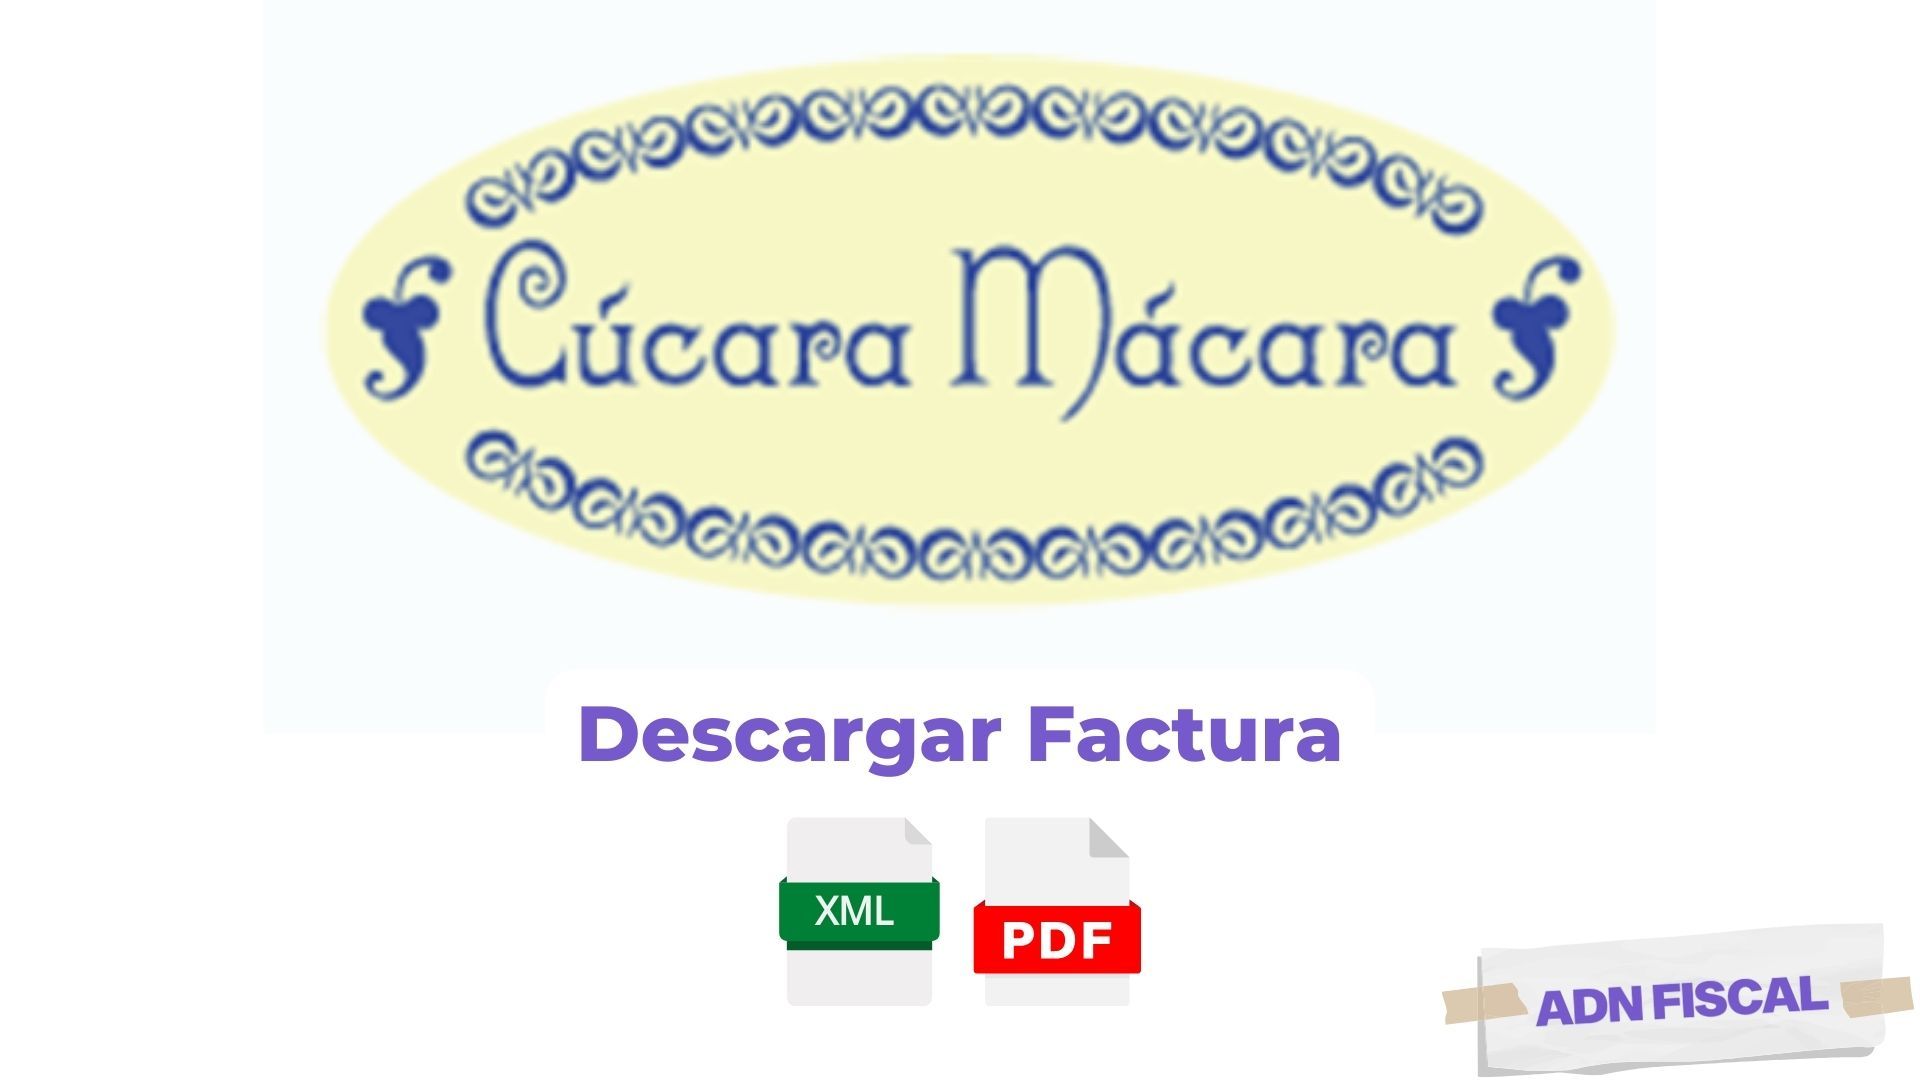 Facturacion Cucara Macara Restaurantes 🍽️ ADN Fiscal